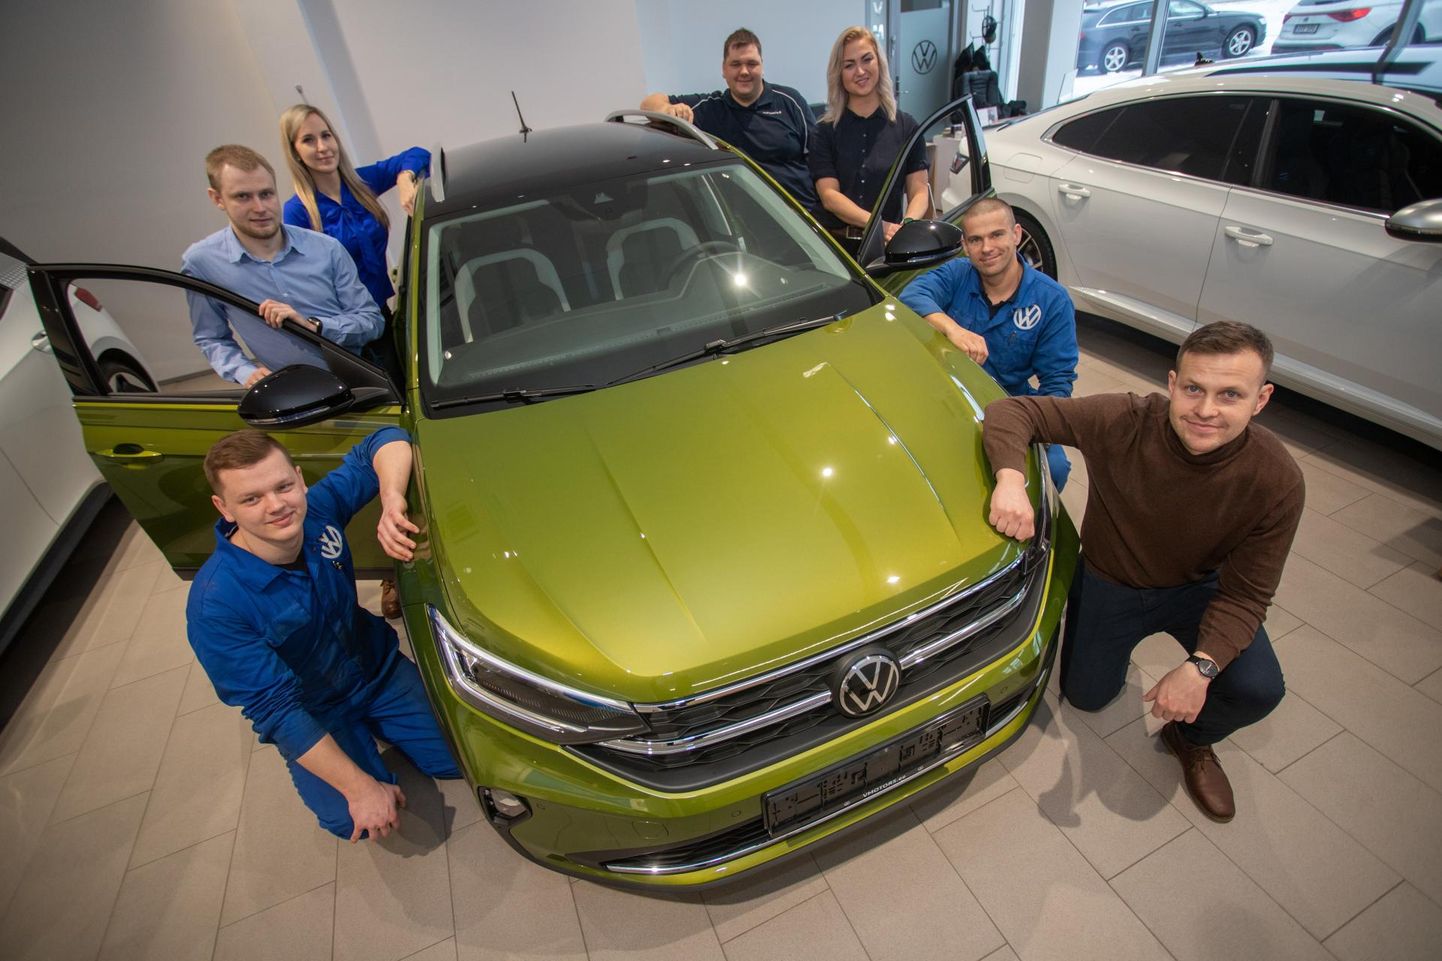 Вильяндиский автосалон V Motors выбрали лучшим из 20 работающих в странах Балтии представительств Volkswagen.